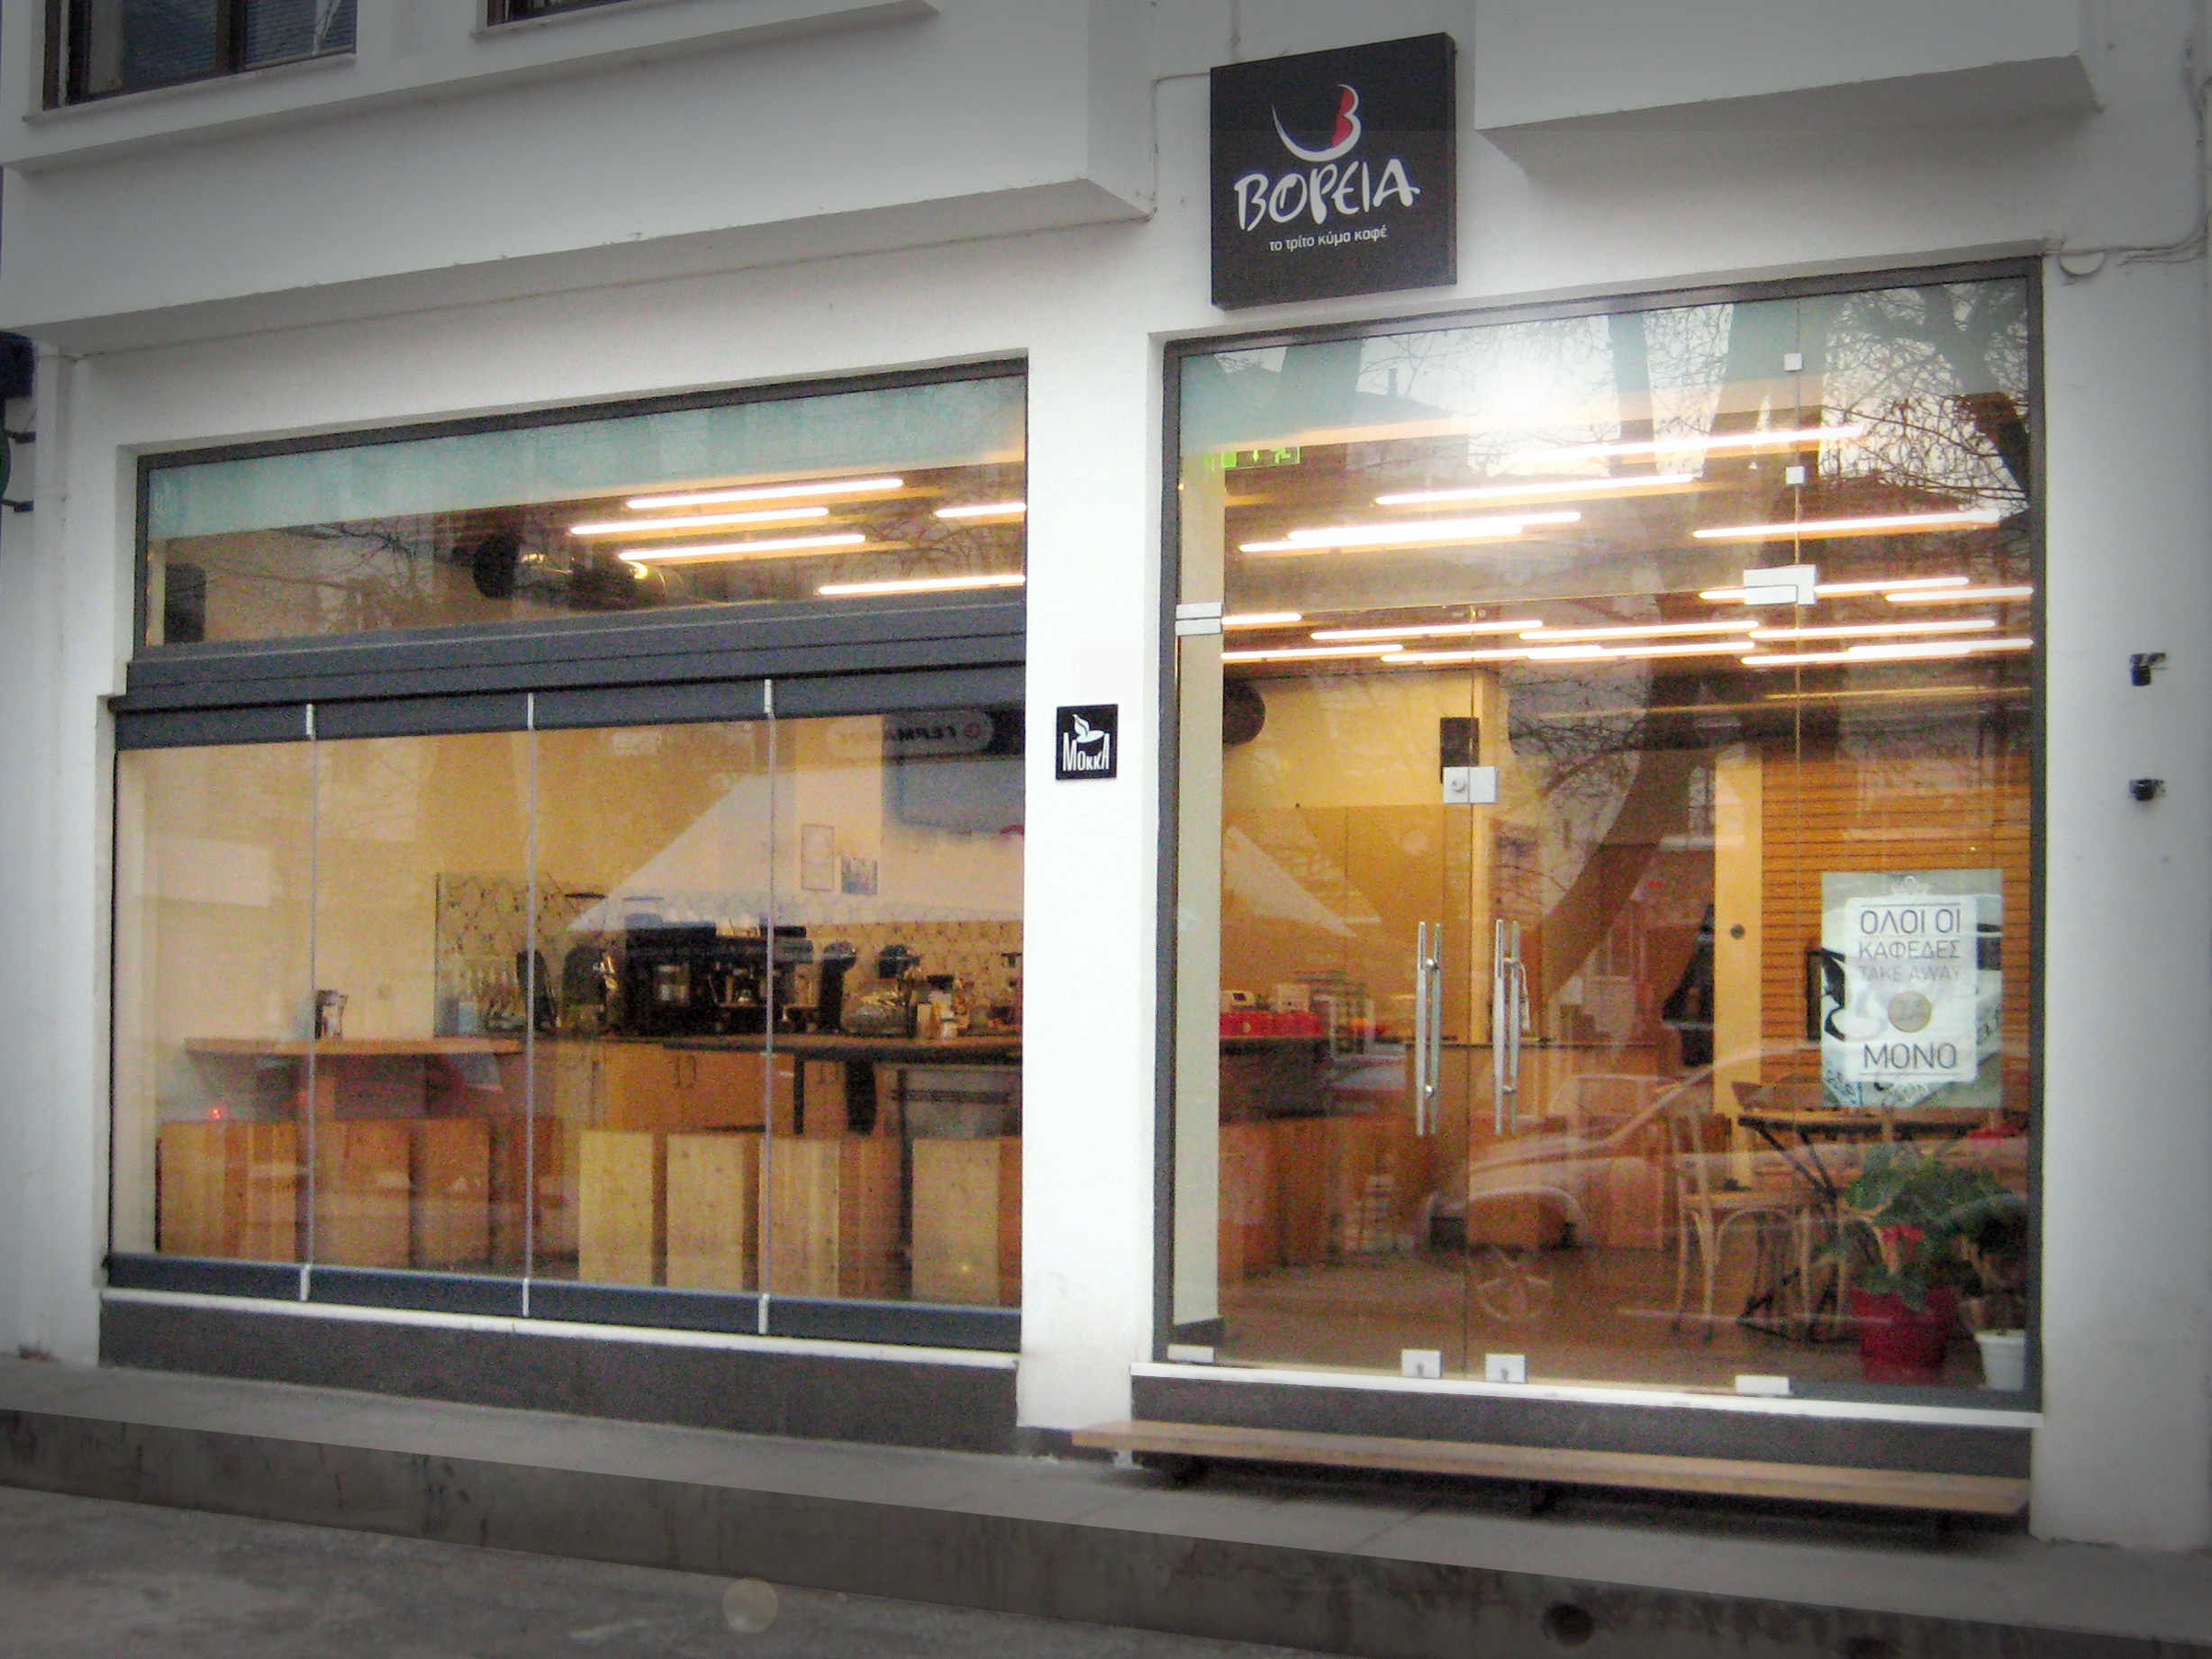 Voreia Cafe